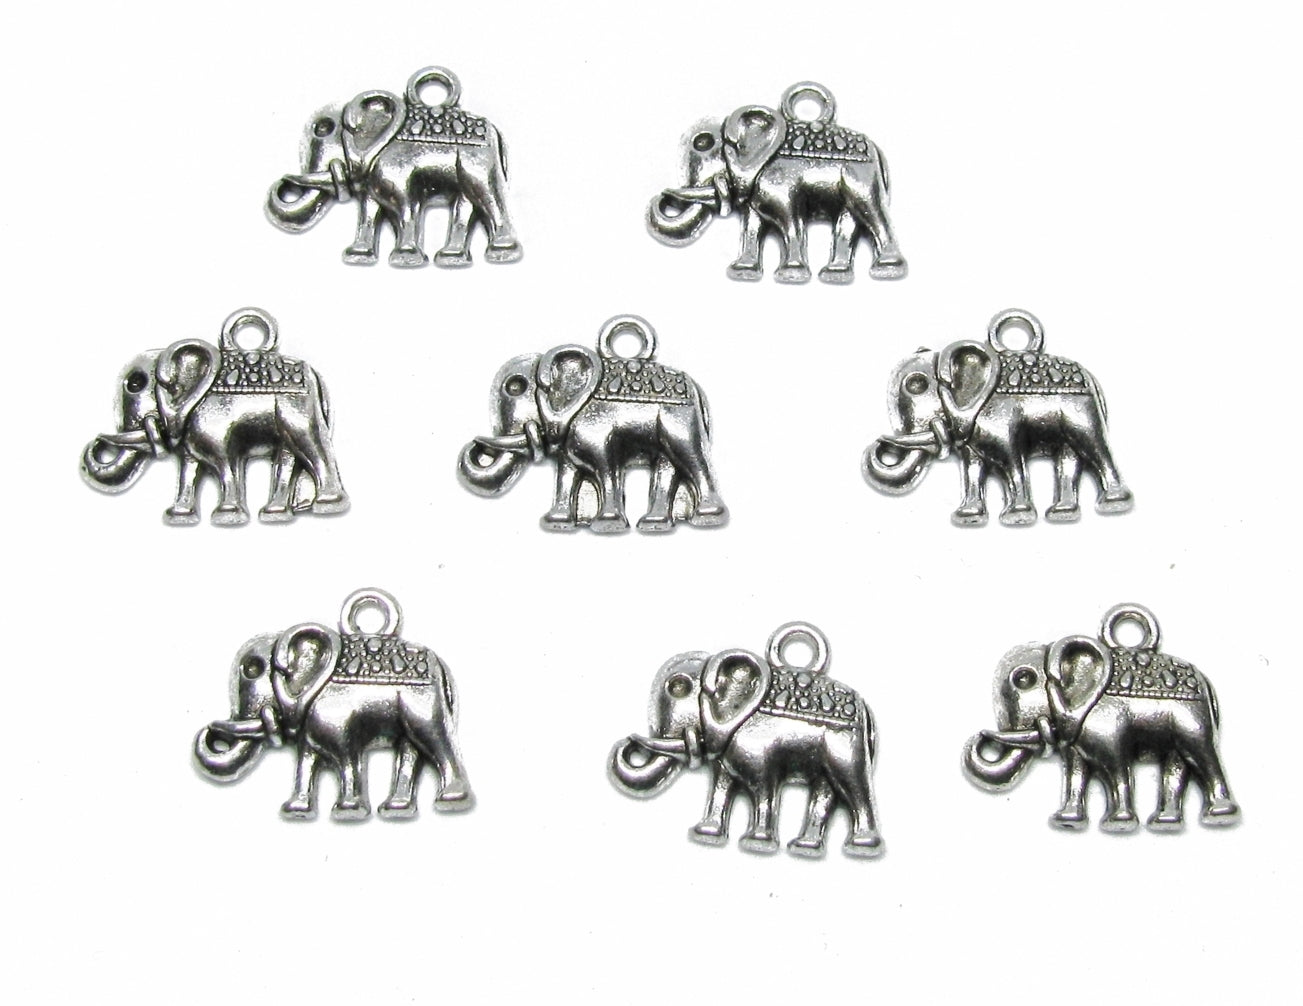 16 Metallanhänger Elefant silberfarben, 1,45 x 1,7 cm, für Bettelarmbänder und K